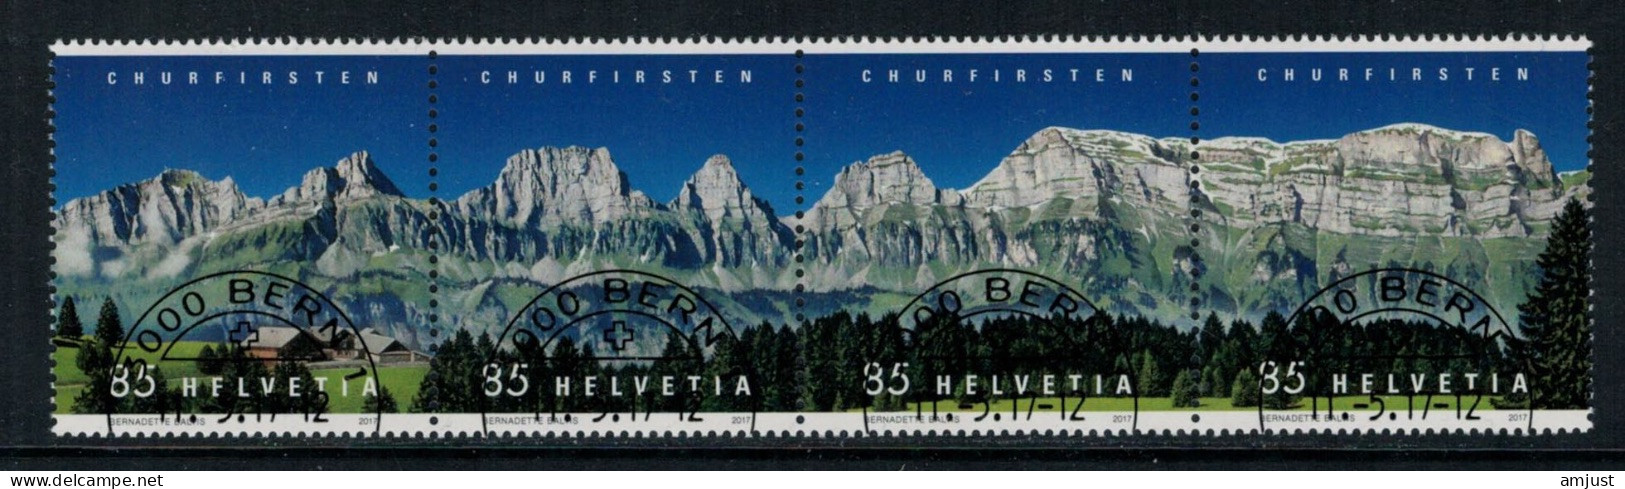 Suisse /Schweiz/Svizzera/Switzerland // 2017 // Churfirsten  Oblitéré No. 1631-1634 - Gebruikt